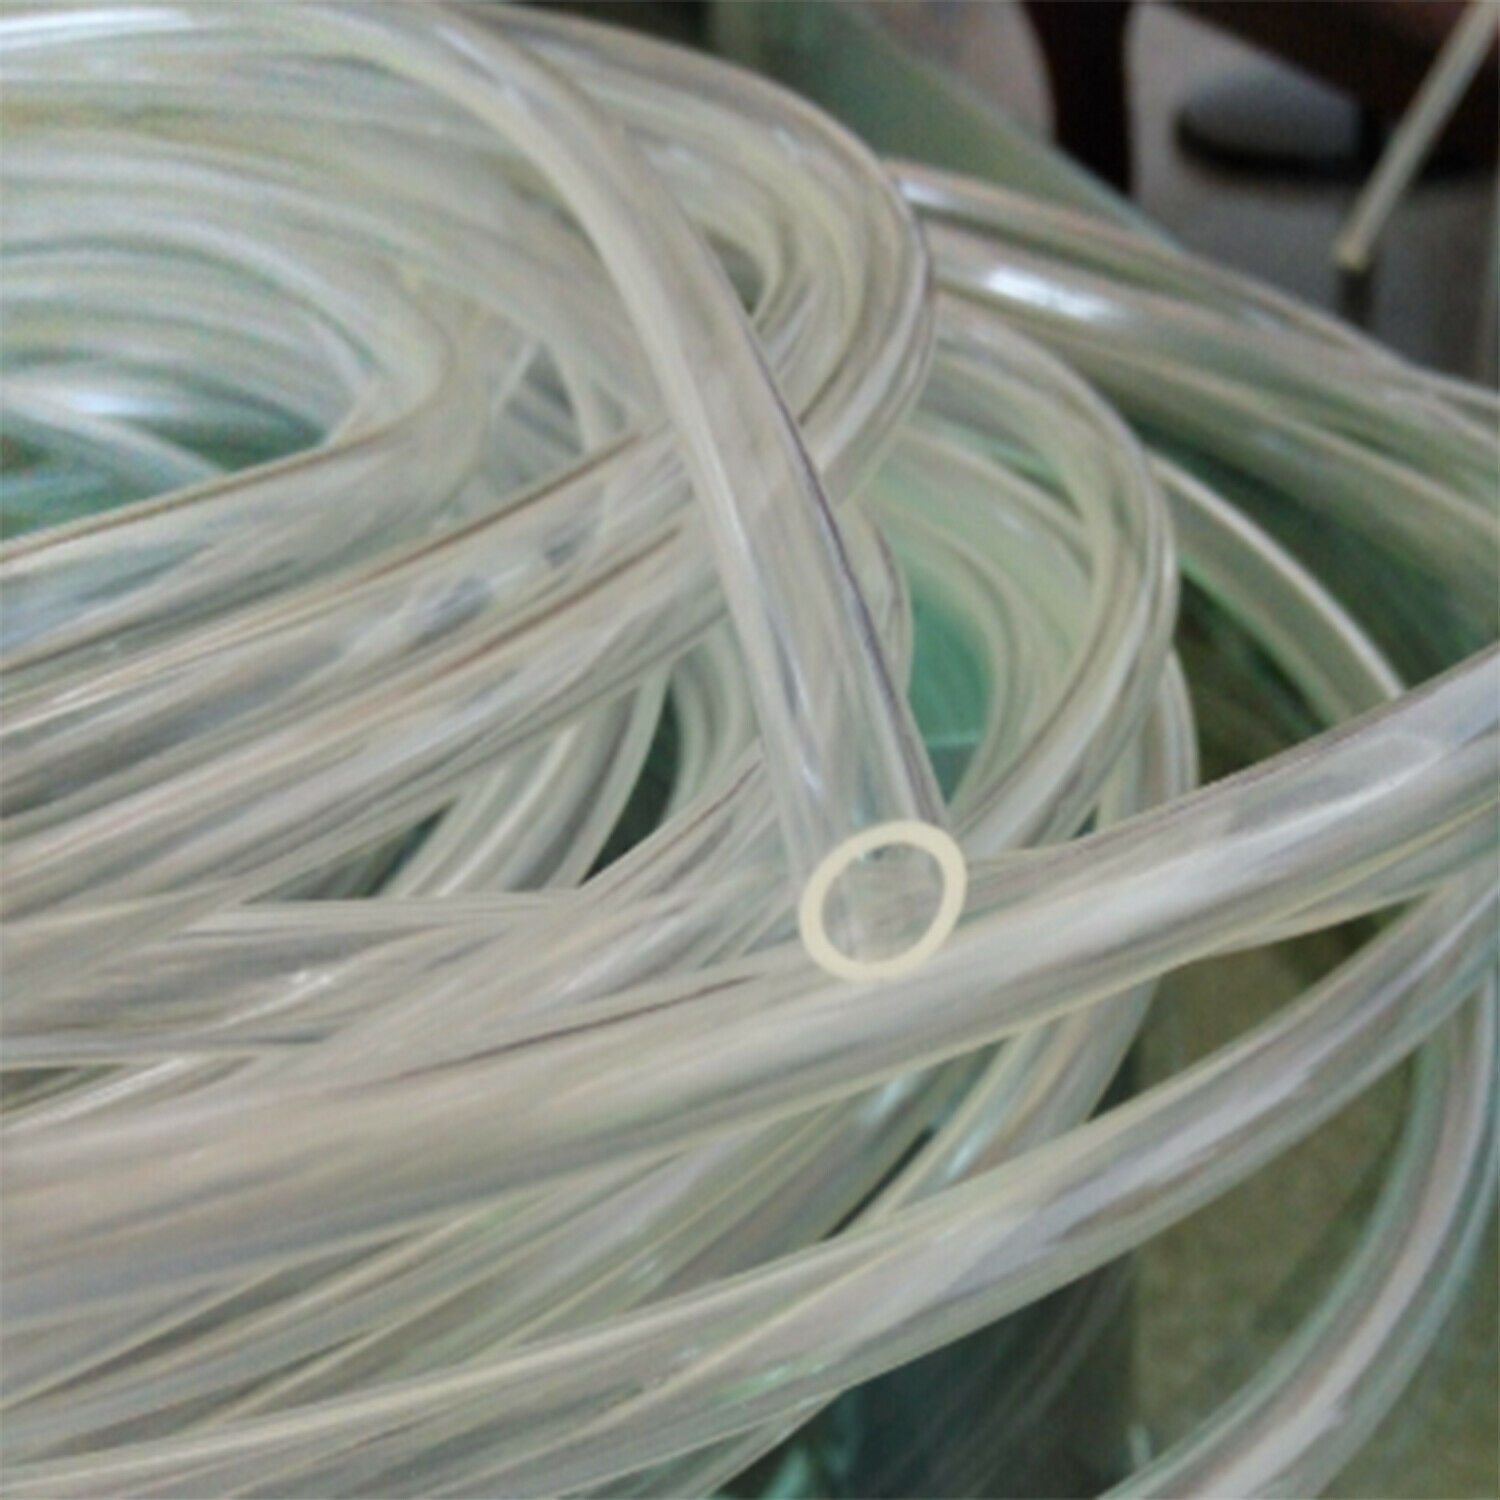 5 Meter Vinyl Tube Clear Pvc Plastic Slangen Slang Schoonspuiten 10 Mm